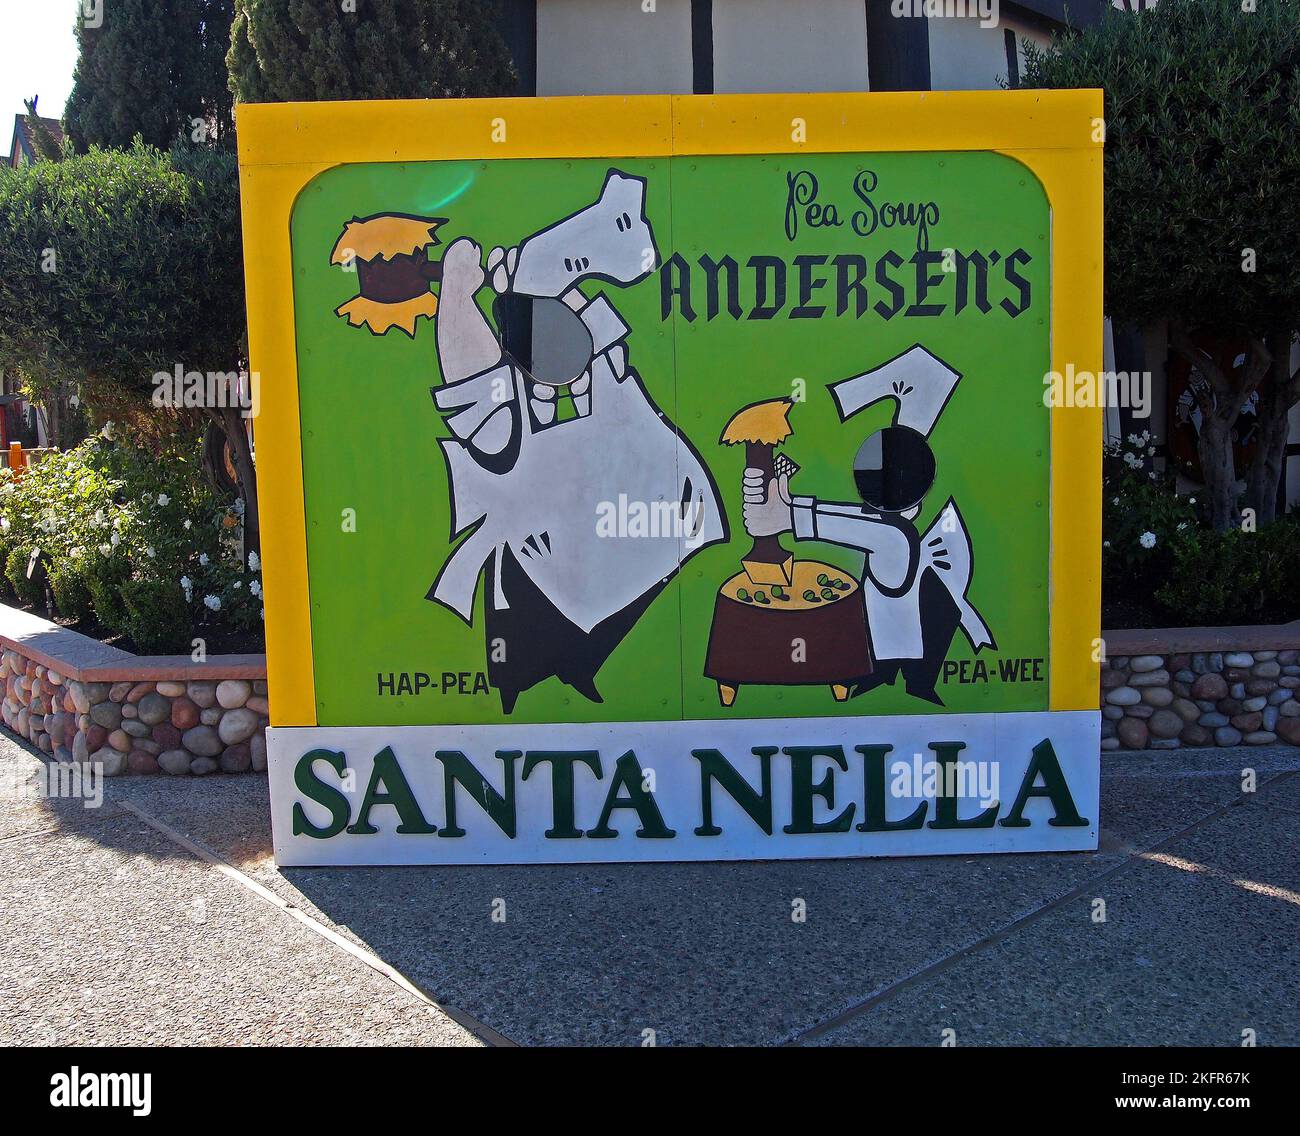 El cartel de la sopa de guisantes de Andersen en Santa Nella, California Foto de stock